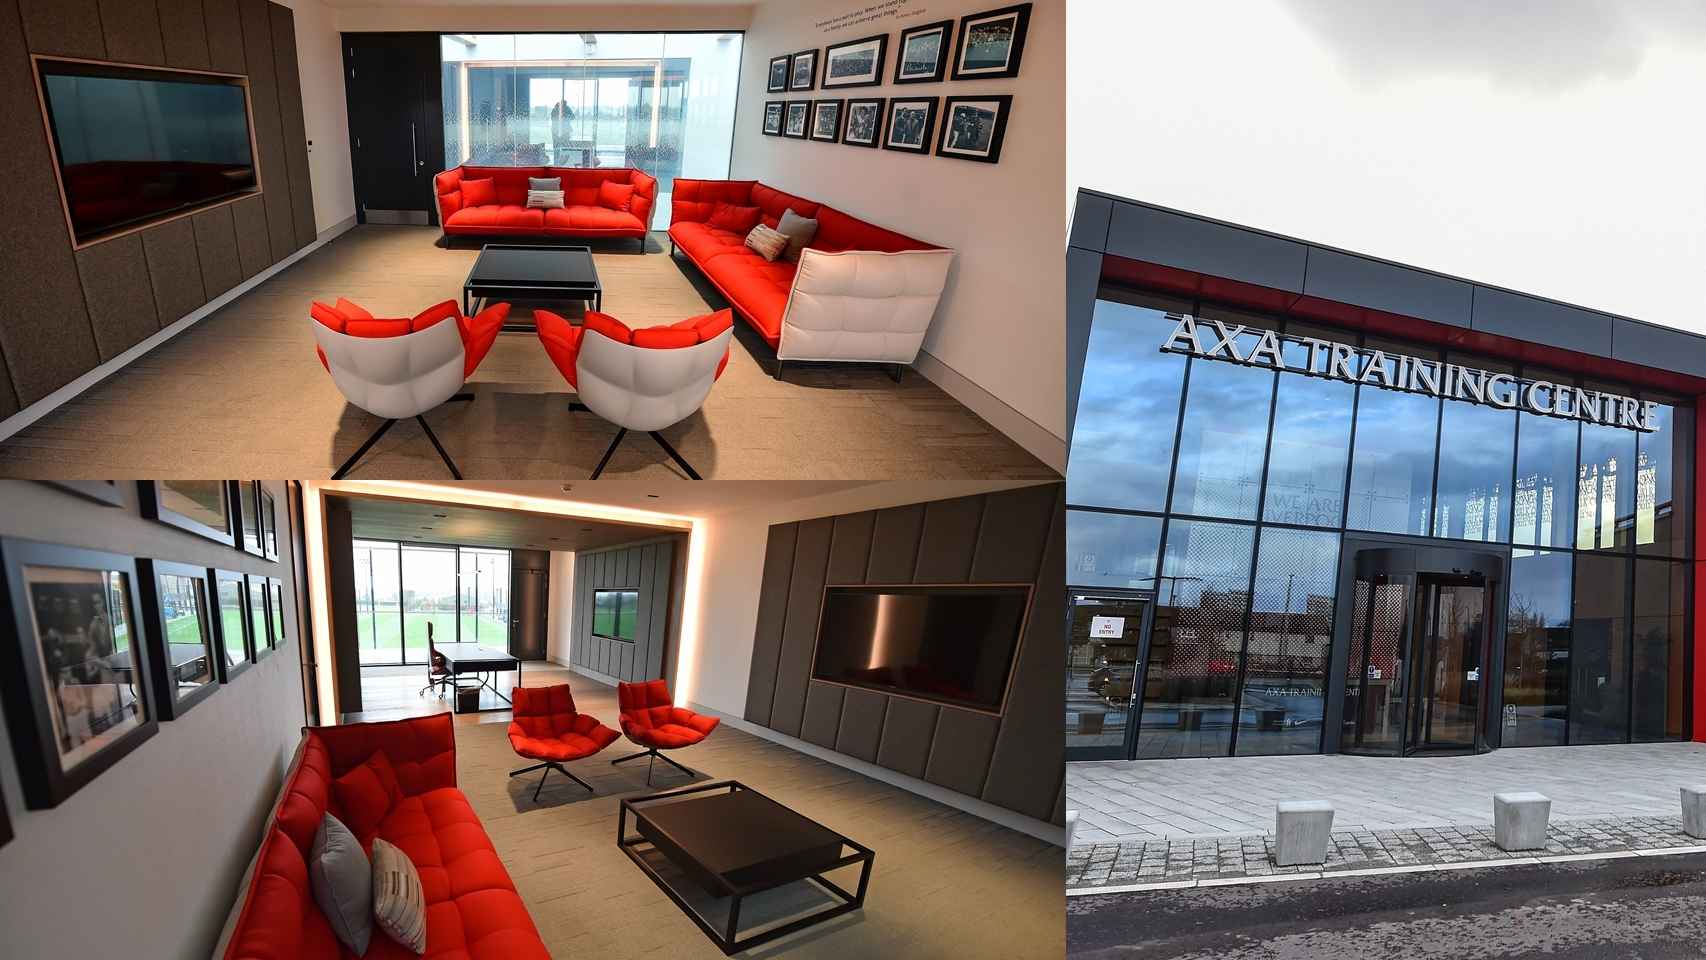 La nueva oficina de Jurgen Klopp en las instalaciones de entrenamiento que estrena el Liverpool. Foto: Twitter (@lfc)